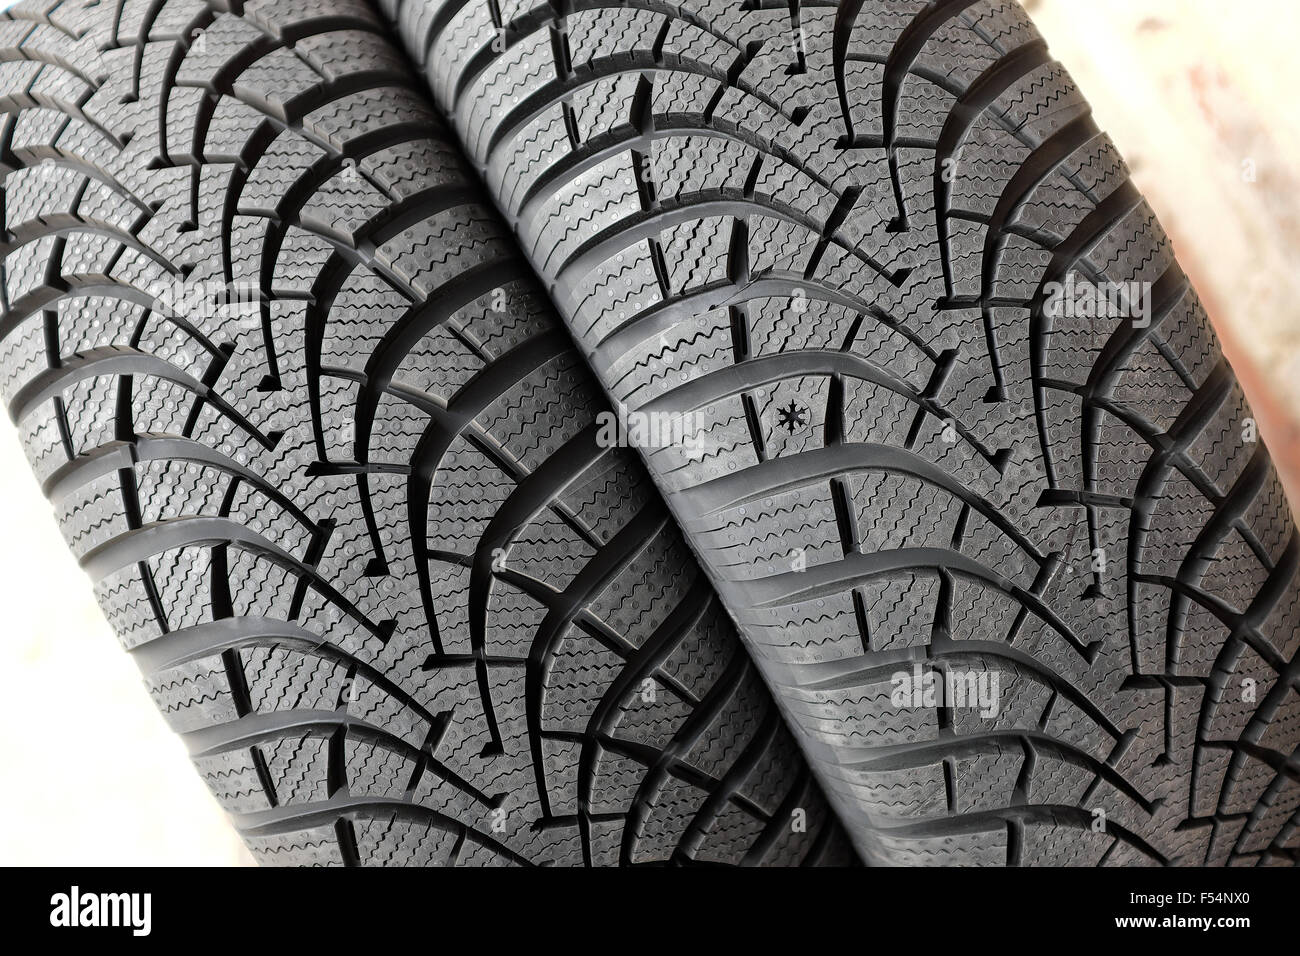 Tout nouveau pneu neige hiver pour voiture montrant la bande de roulement en caoutchouc profil avec gorges profondes, vue en gros plan. Banque D'Images